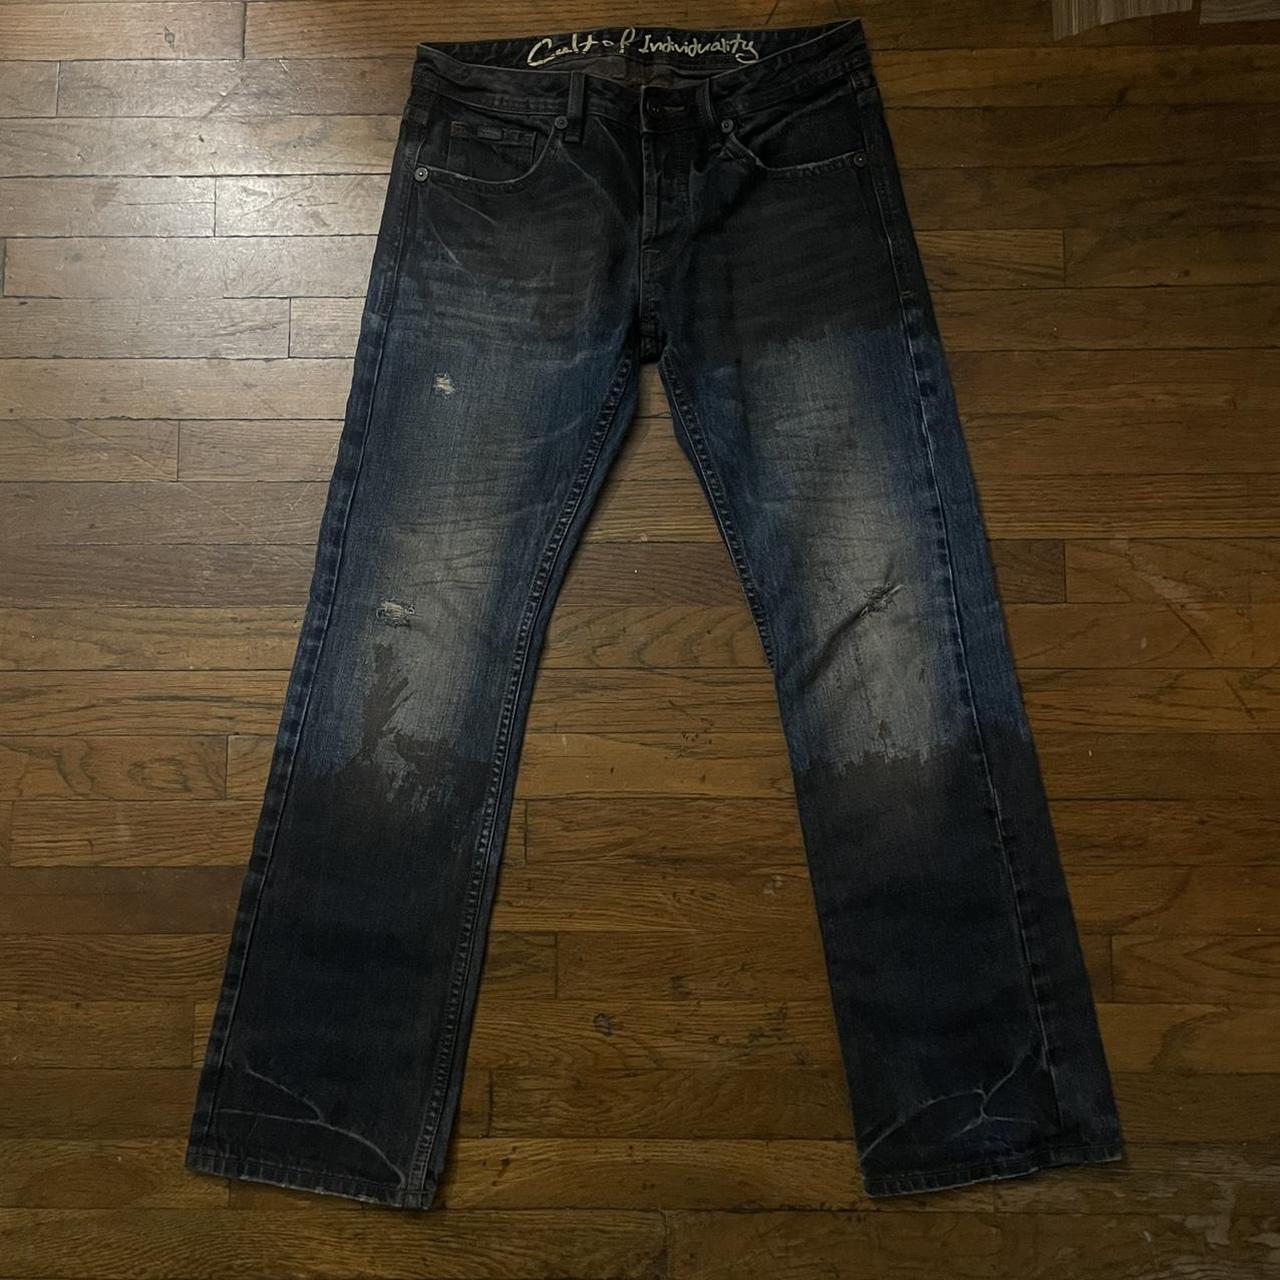 vintage japanese mud jeans size 32x32 very good... - Depop